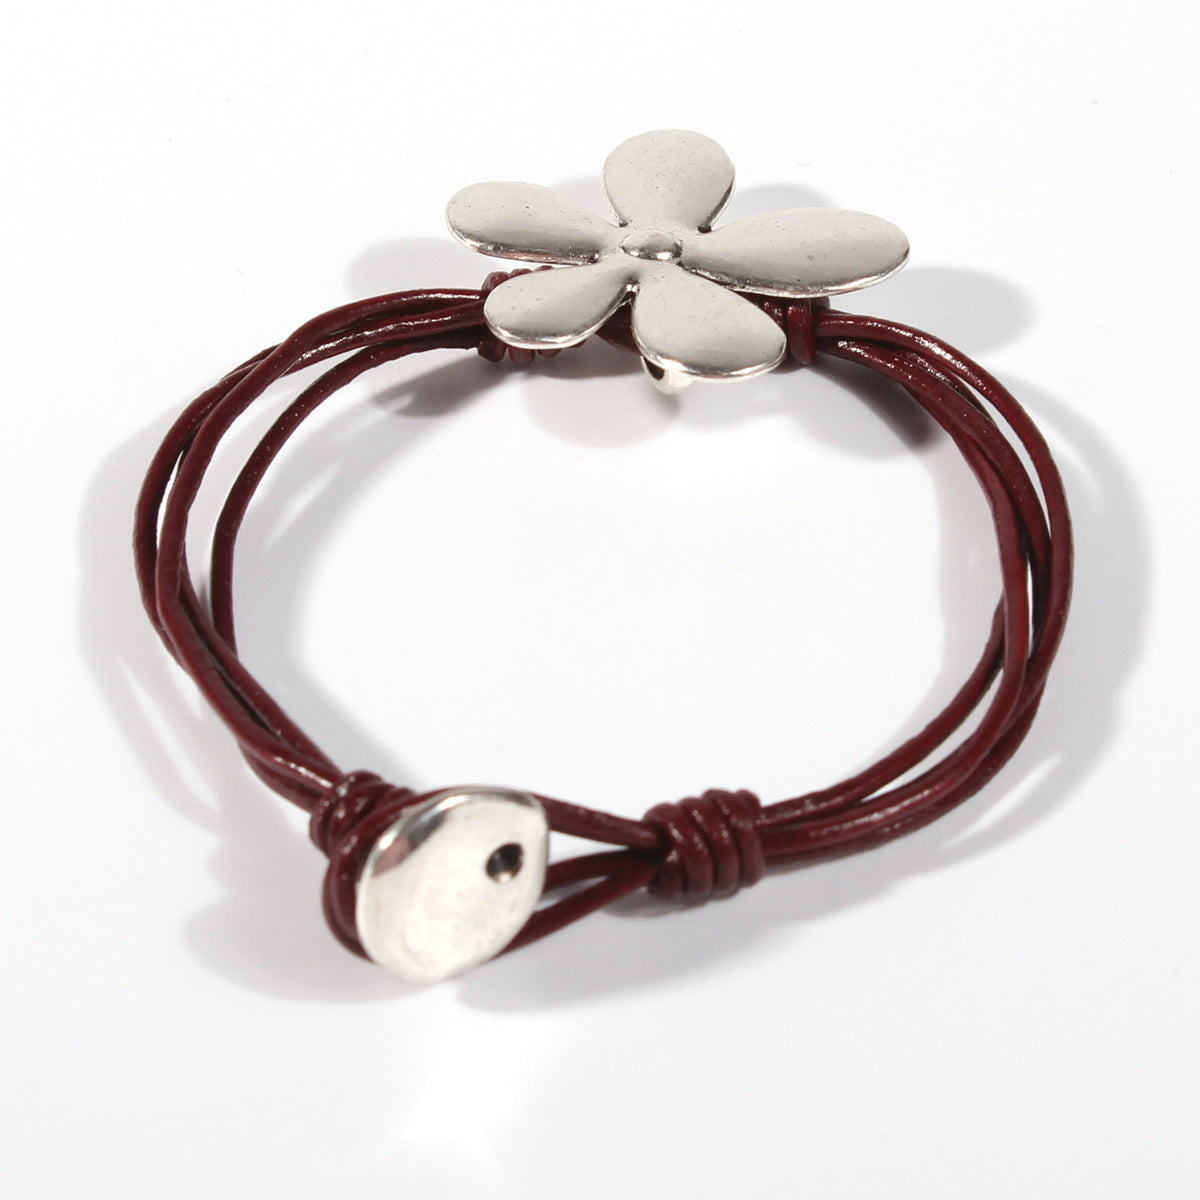 Genuine leather handmade women's bracelet MBR-11